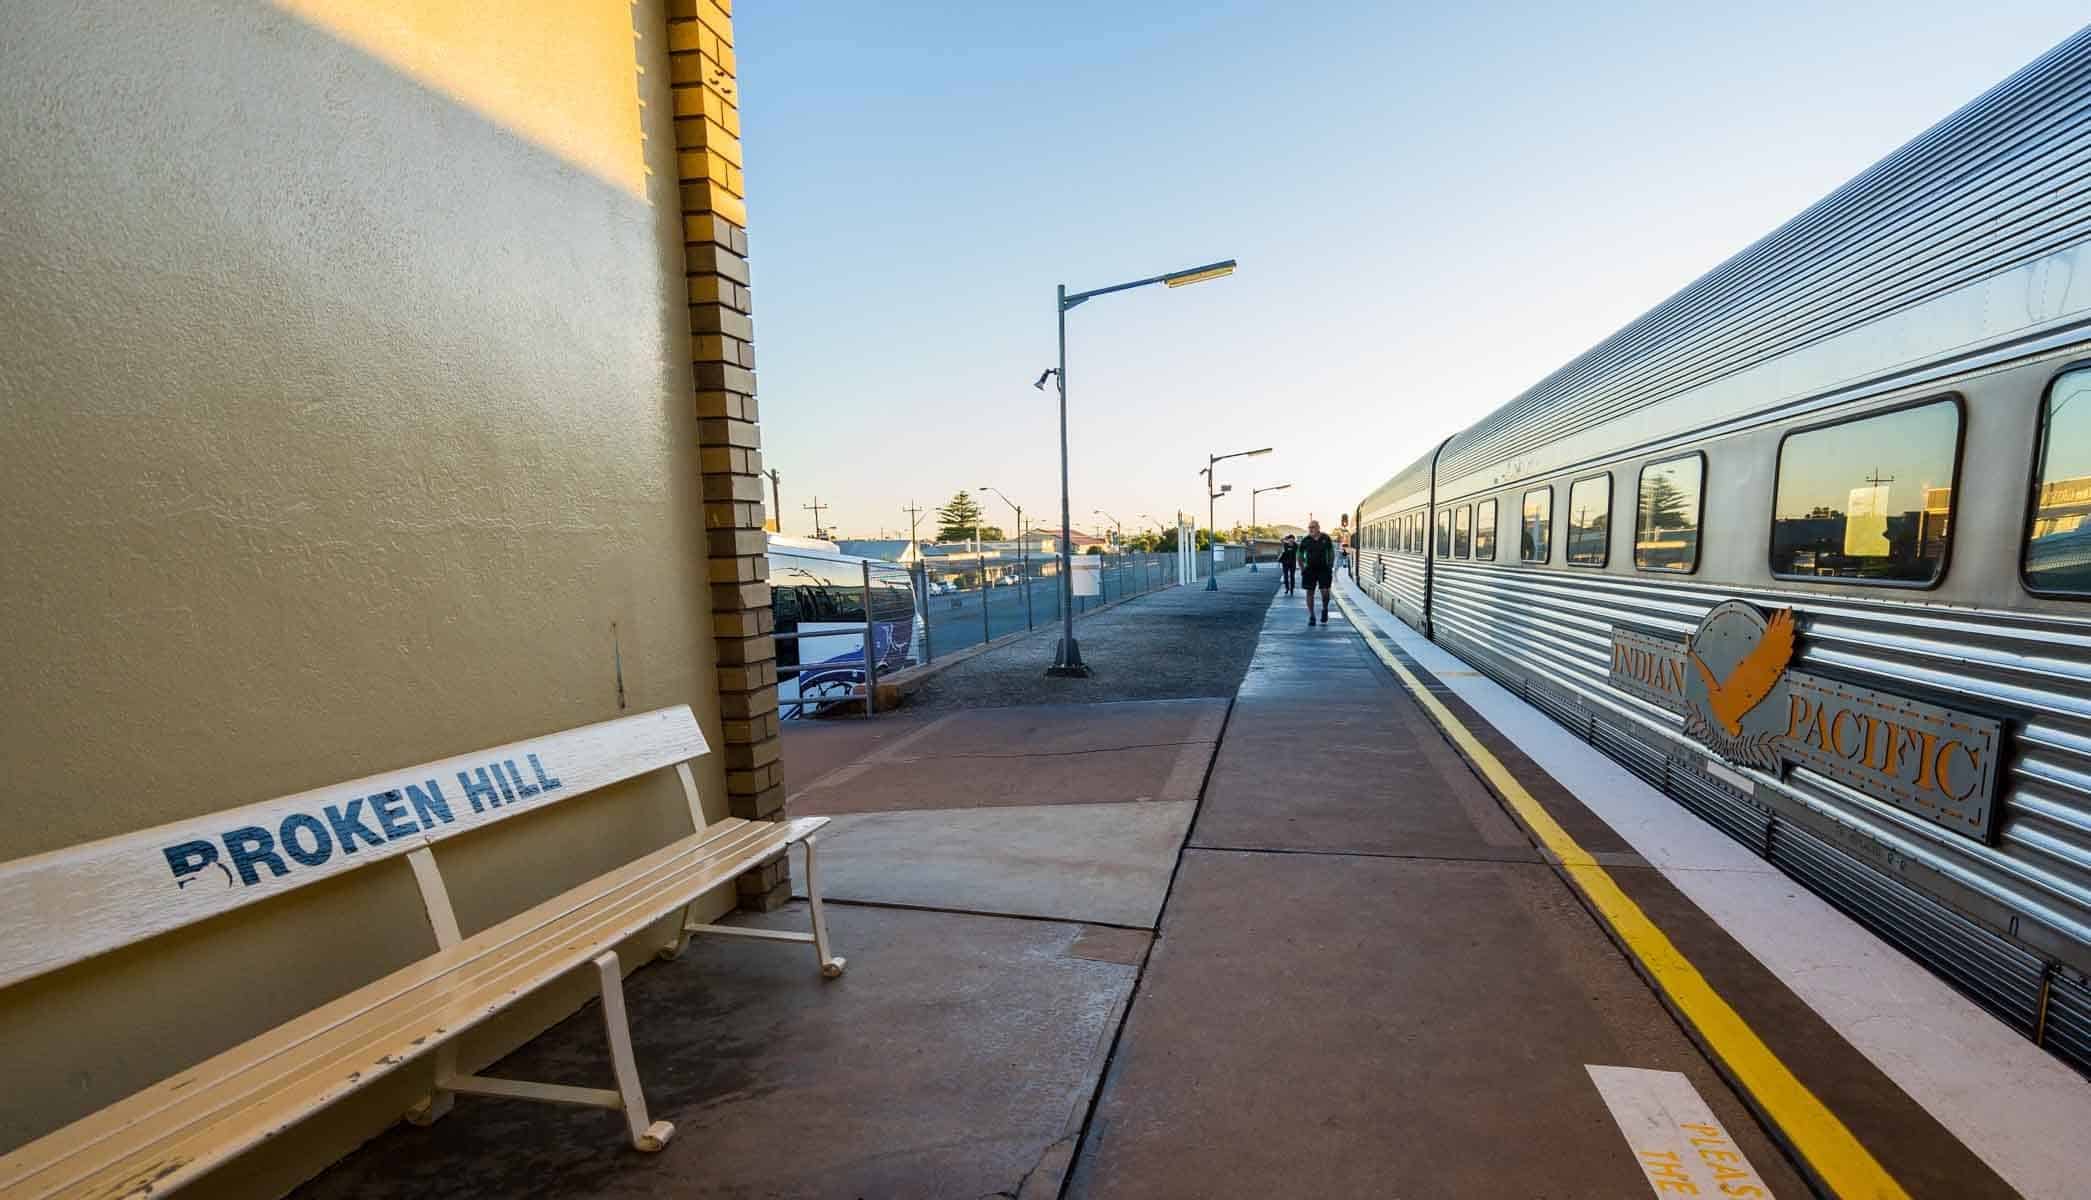 Borken Hill Indian Pacific Rail Journey Sydney To Perth Train #Journeybeyond